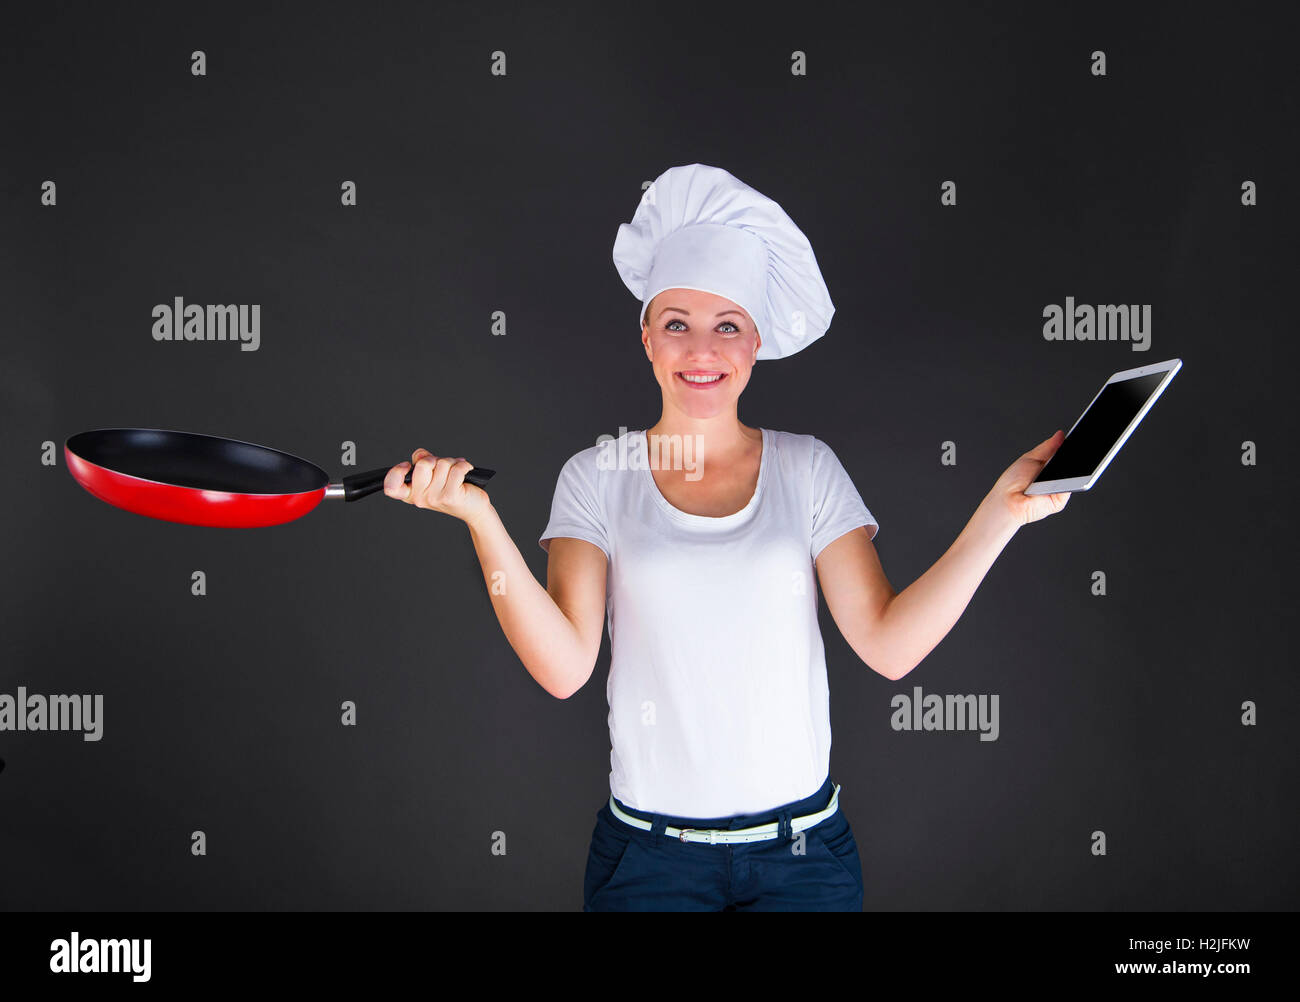 La cuisson, de la technologie et de l'alimentation - concept female, chef cuisinier ou baker avec tablette PC ordinateur Banque D'Images